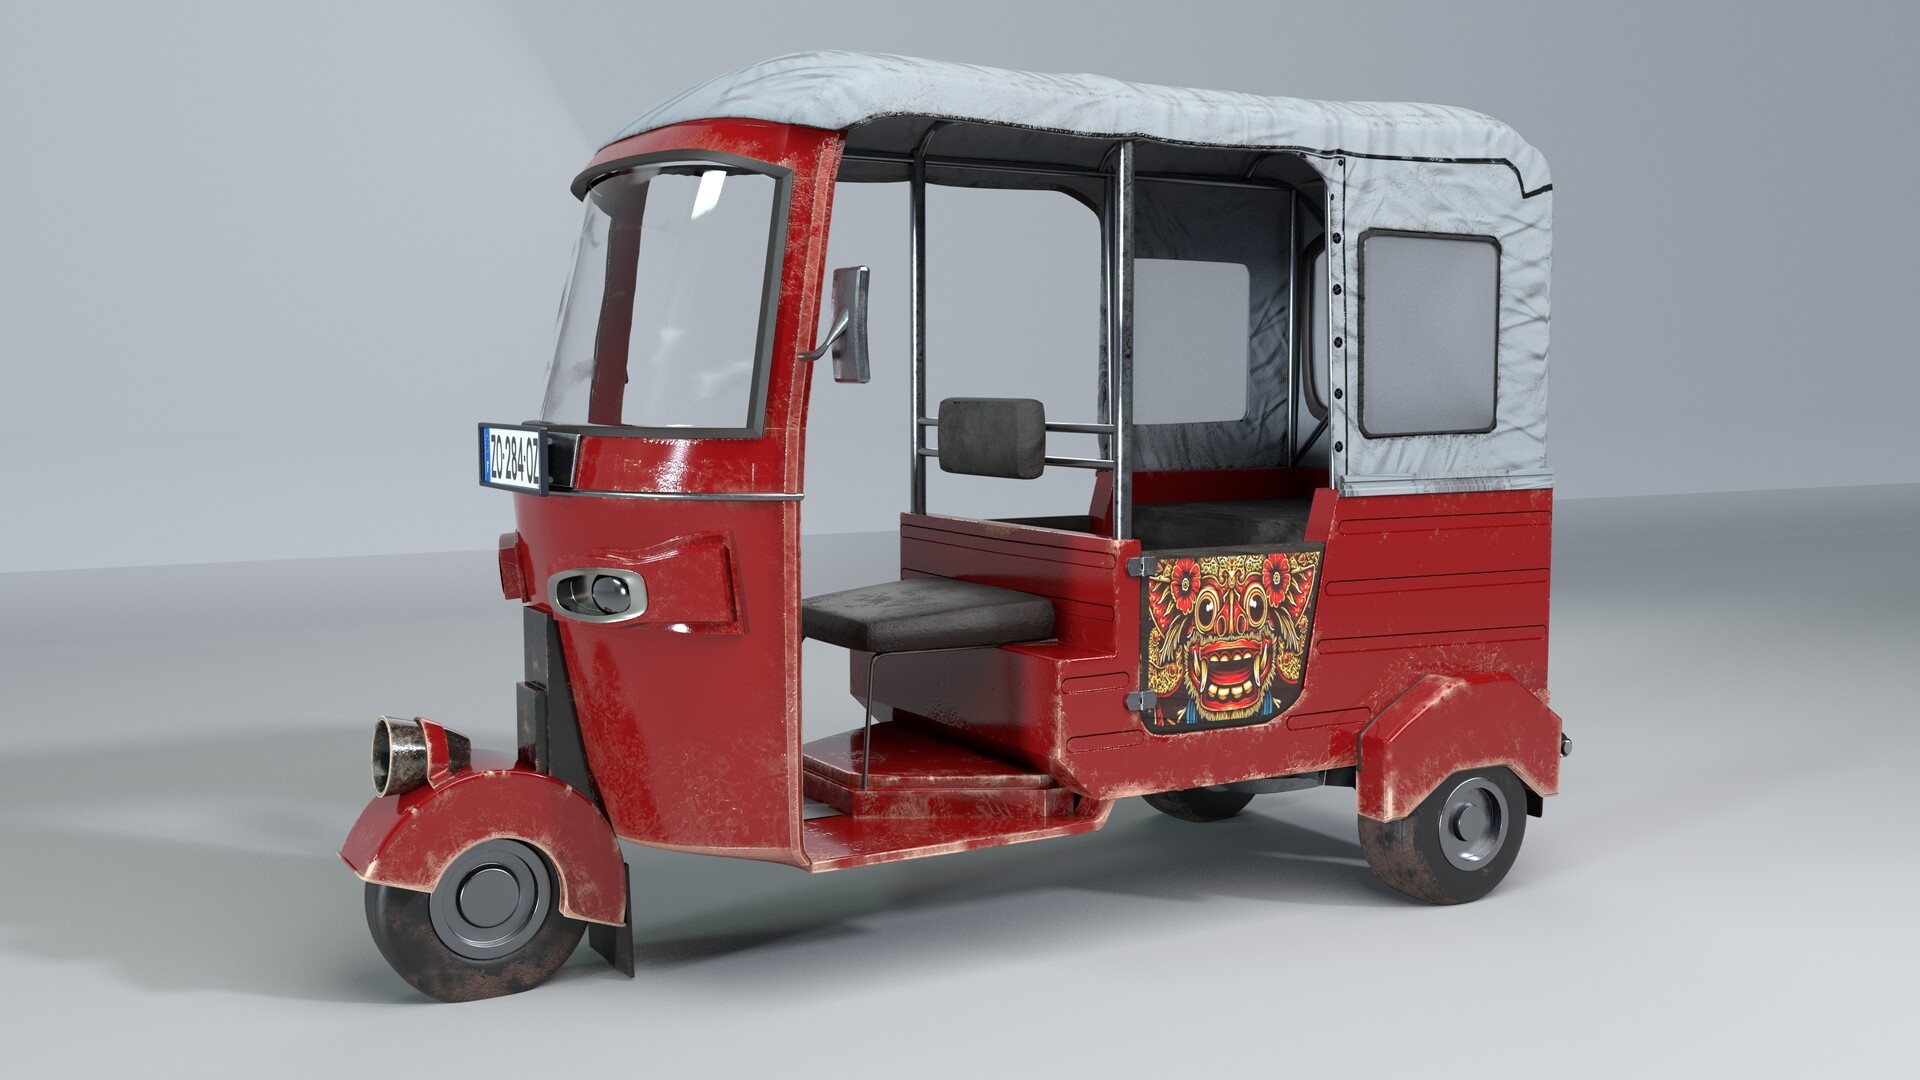 Tuk Tuk Car, Artistic representation, Unique transport, Quirky vehicle, 1920x1080 Full HD Desktop